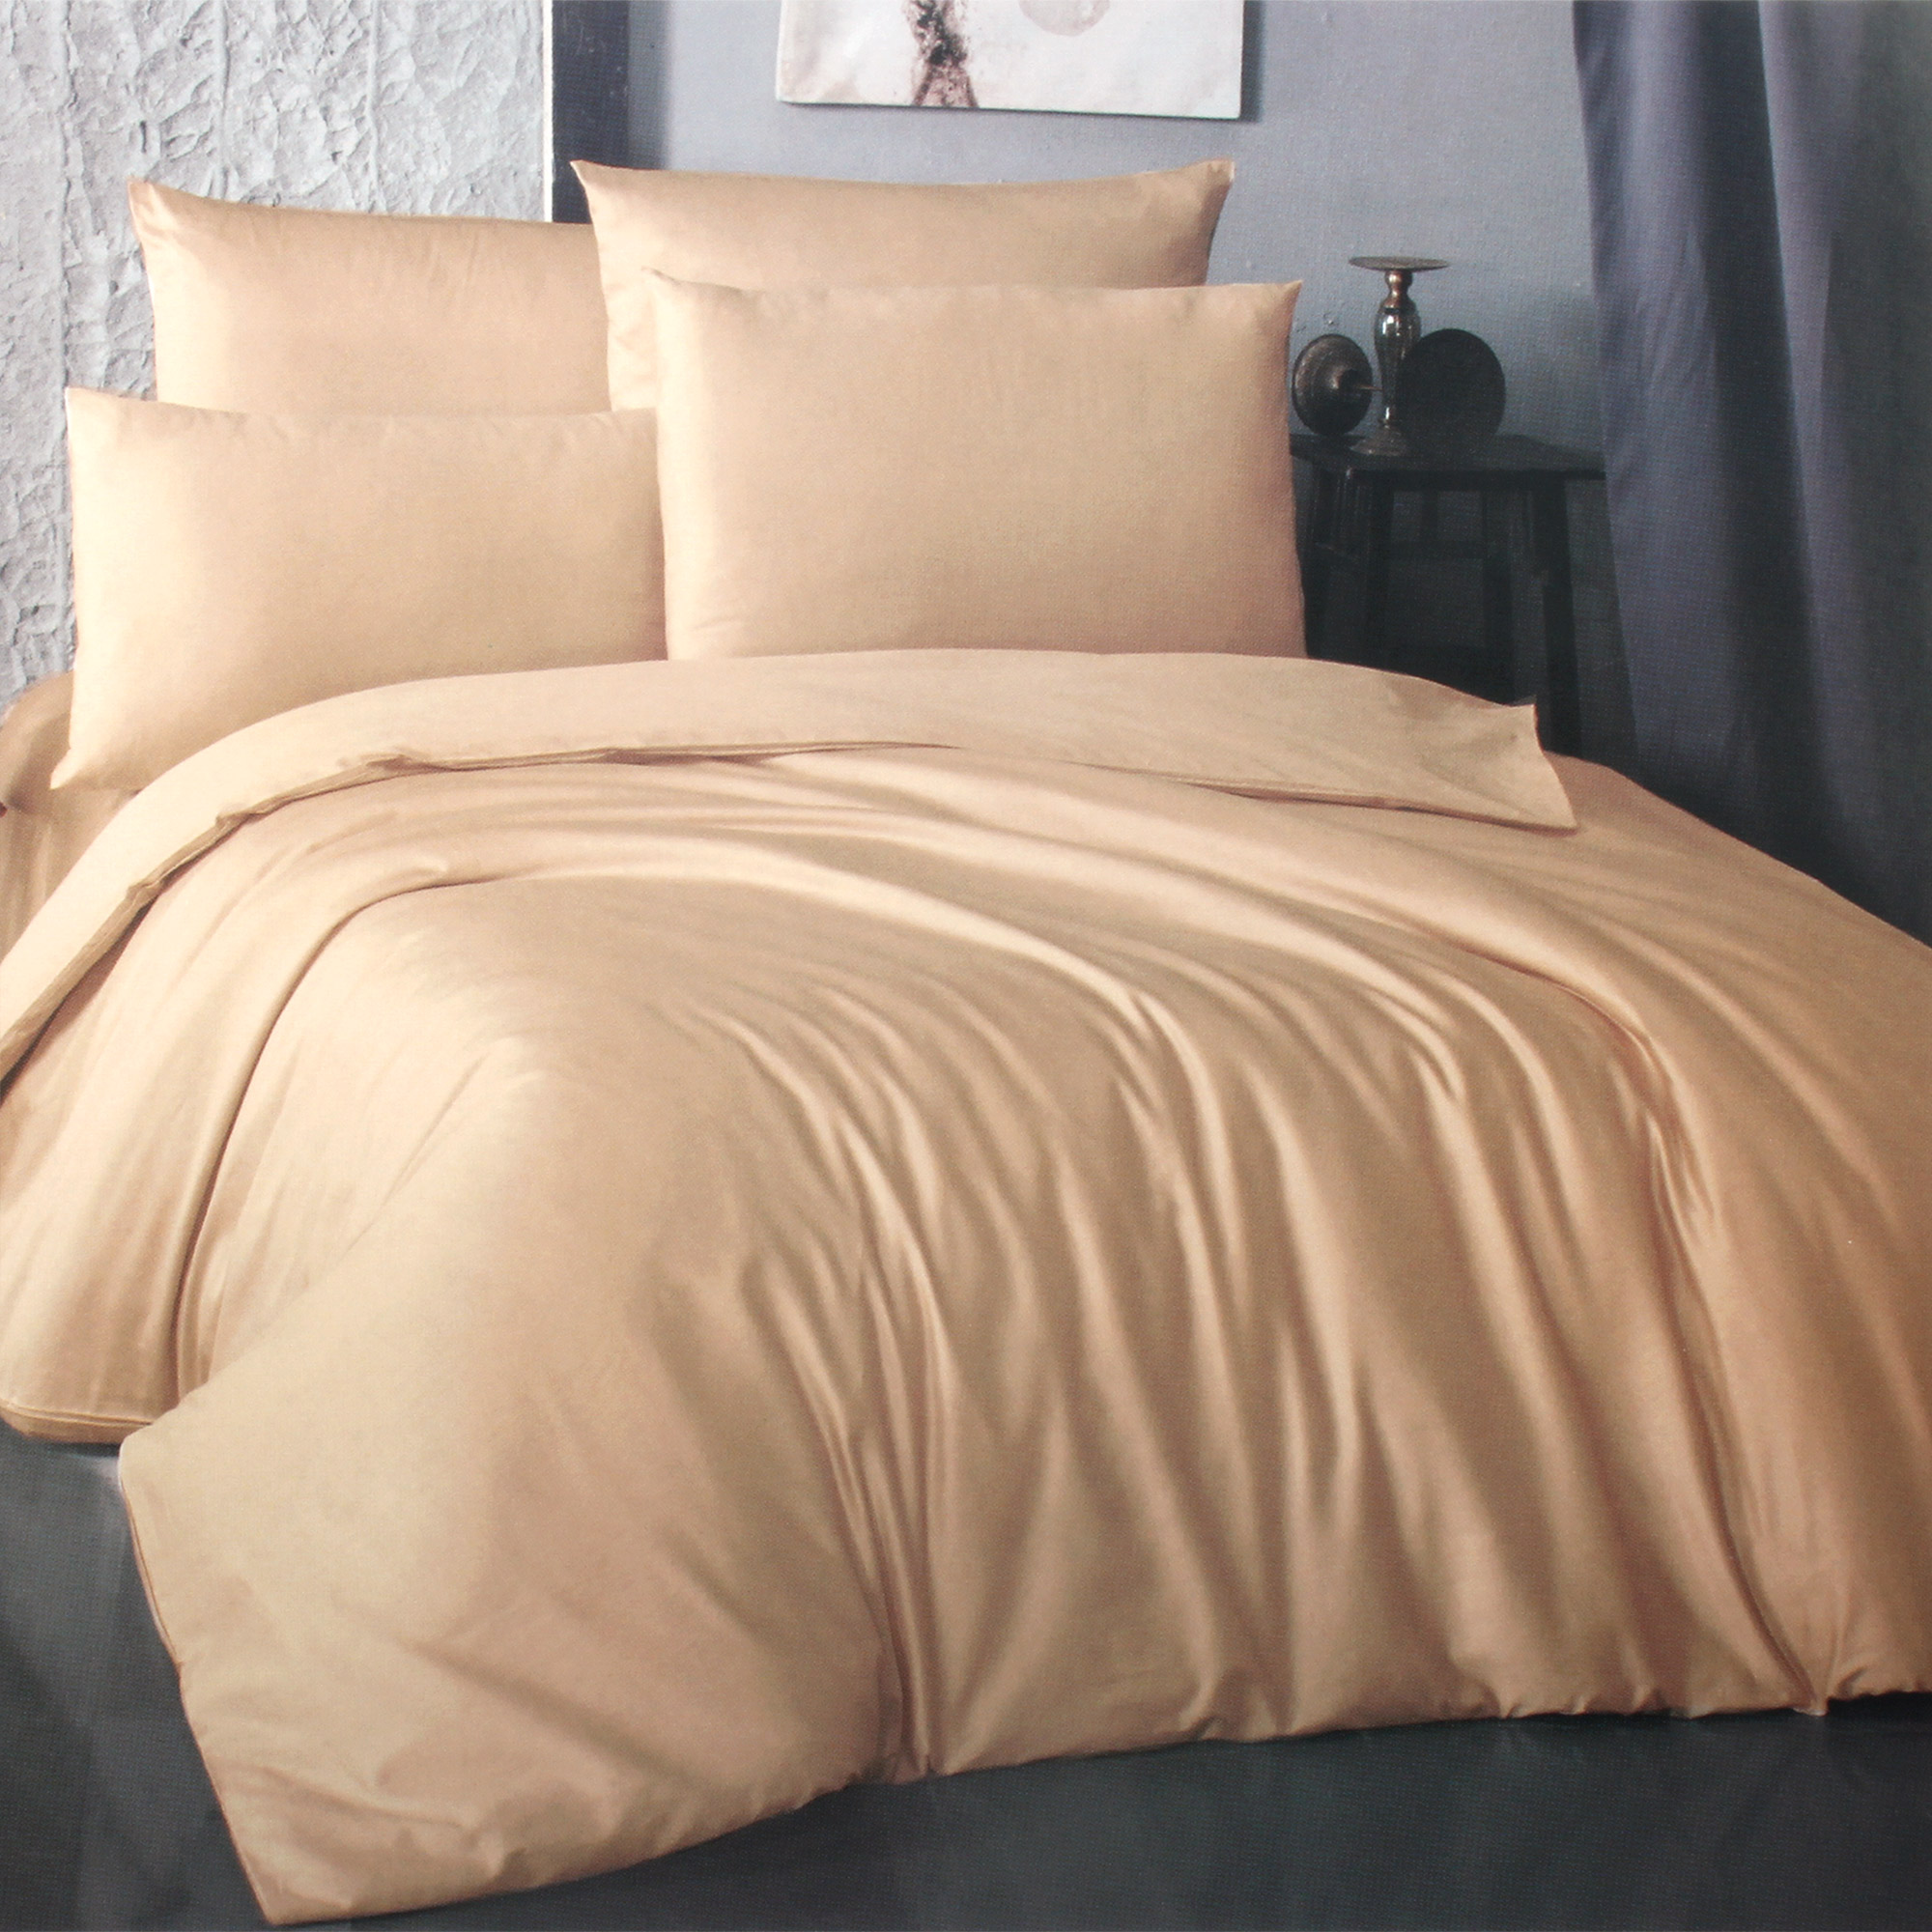 Комплект постельного белья La Besse Ранфорс бежевый Полуторный, размер Полуторный - фото 1